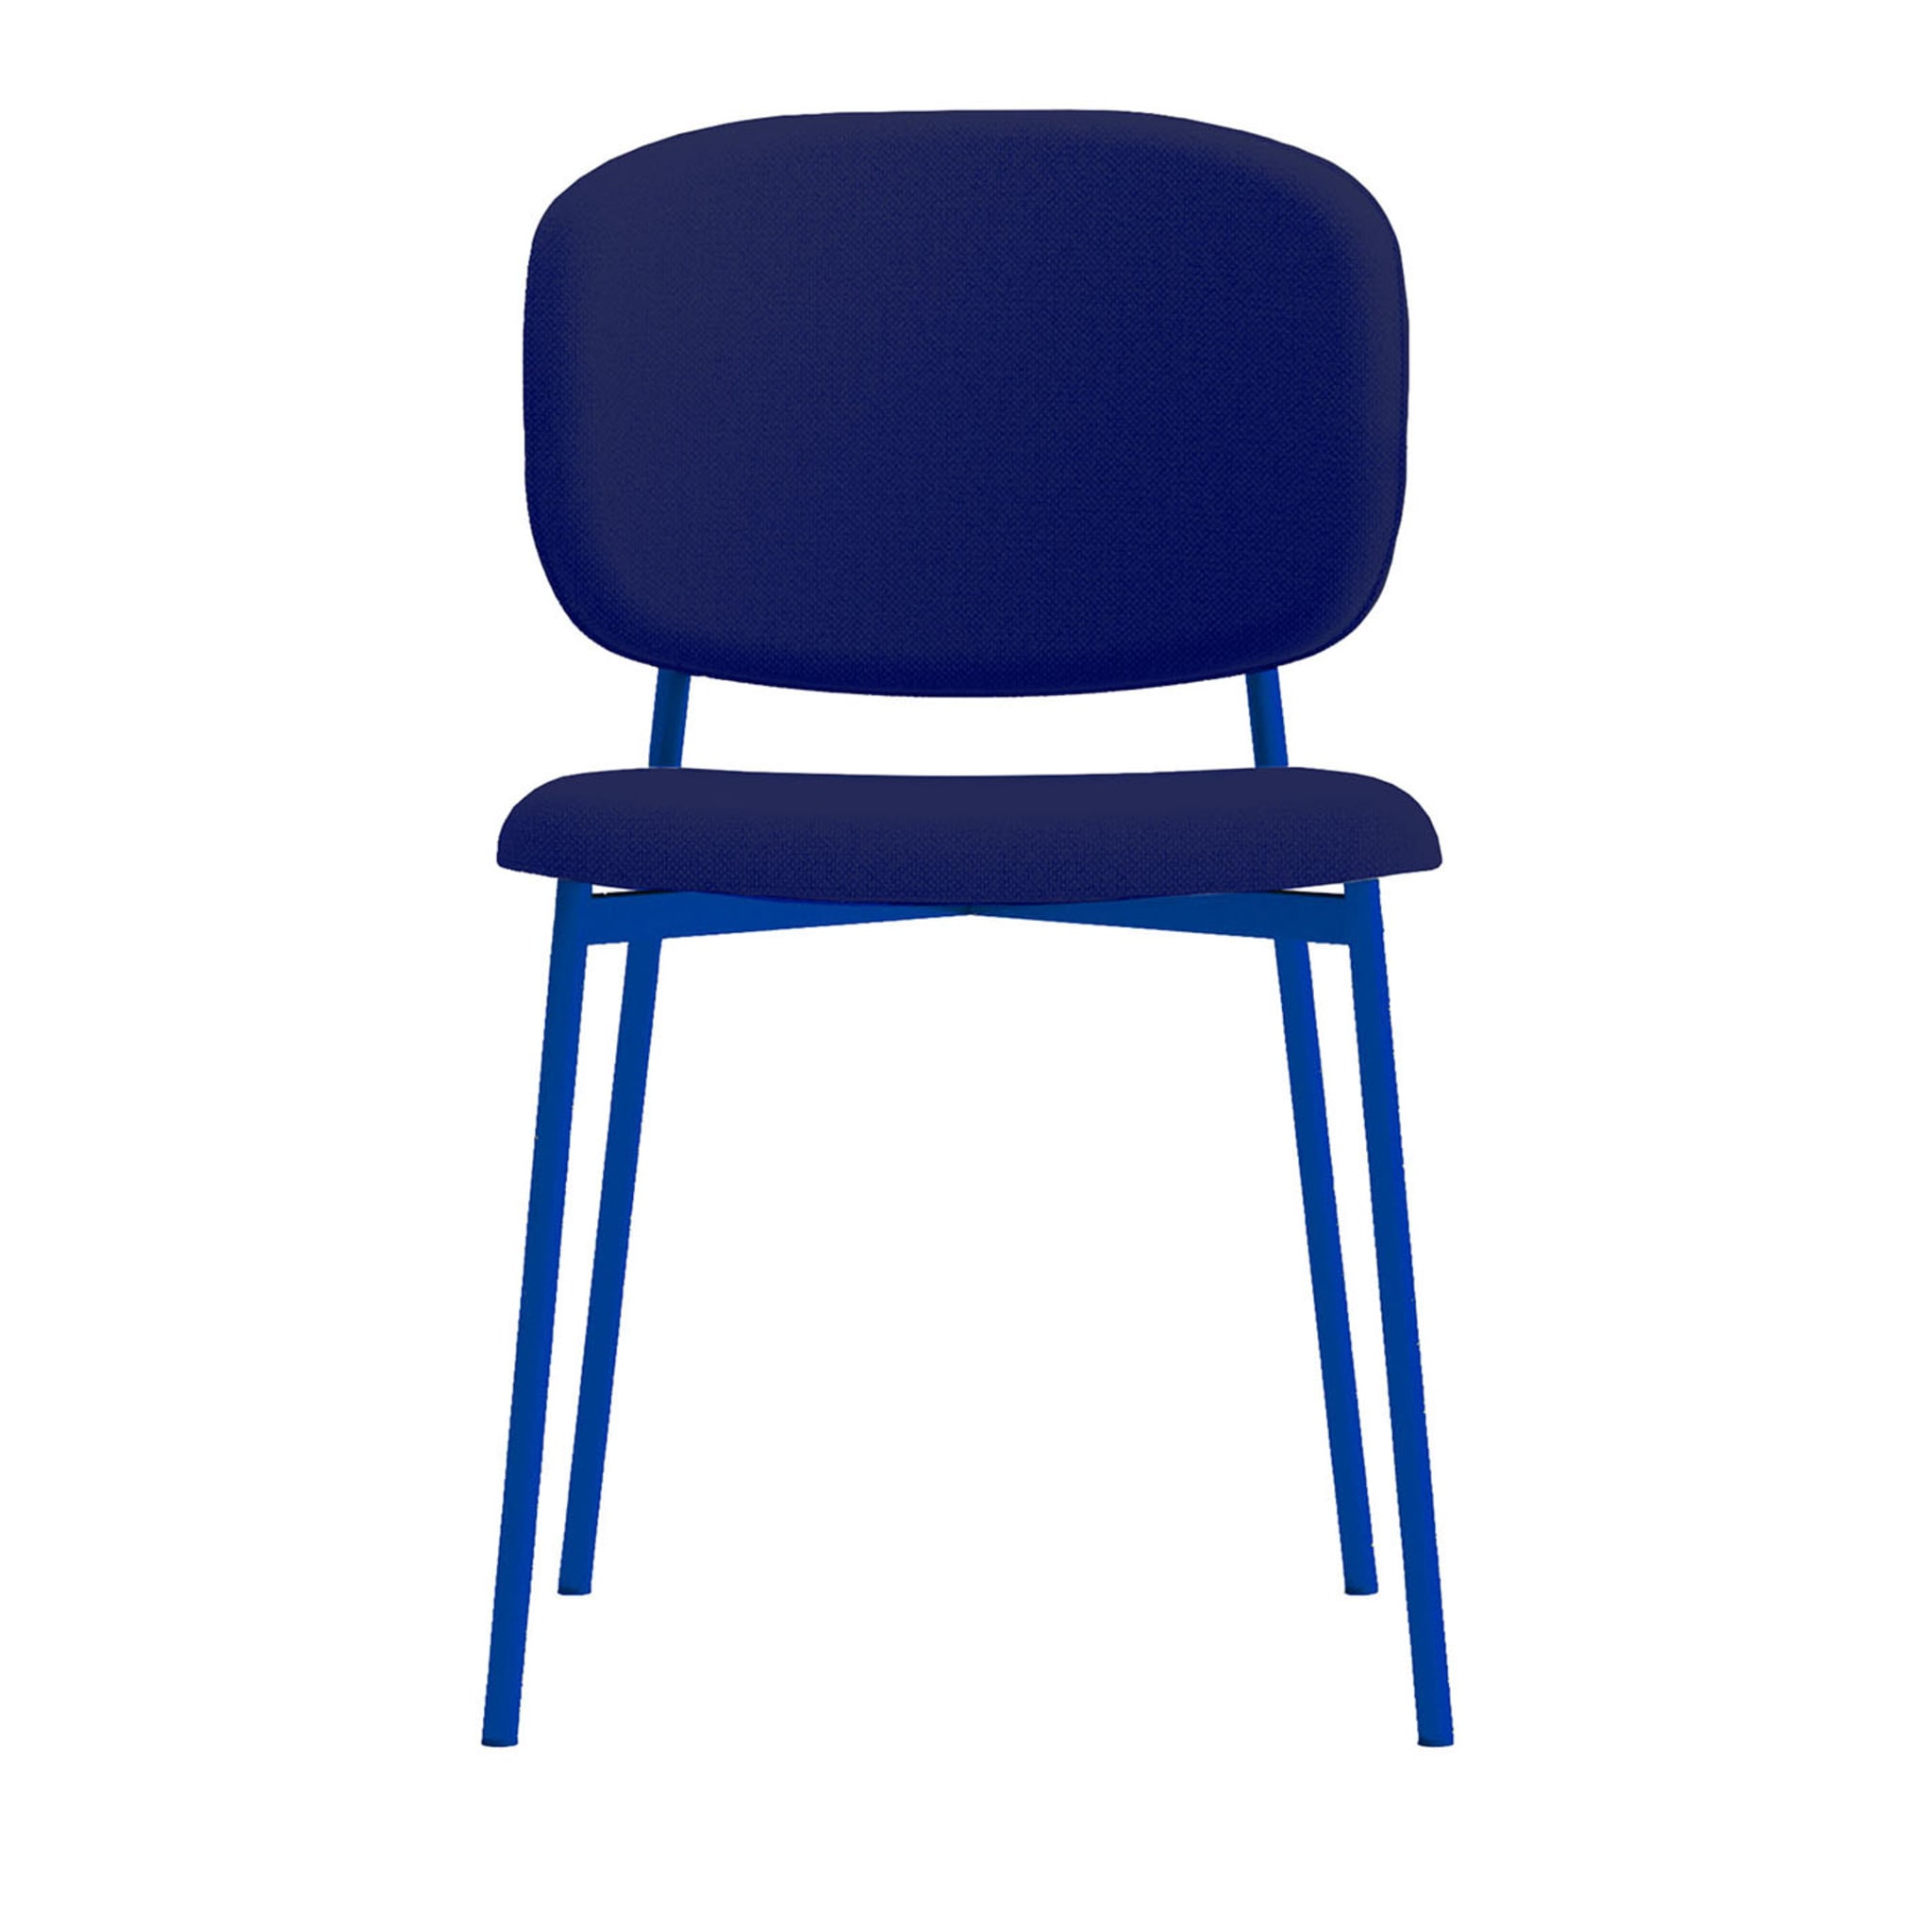 Wround Blauer Stuhl von Copiosa Lab - Hauptansicht